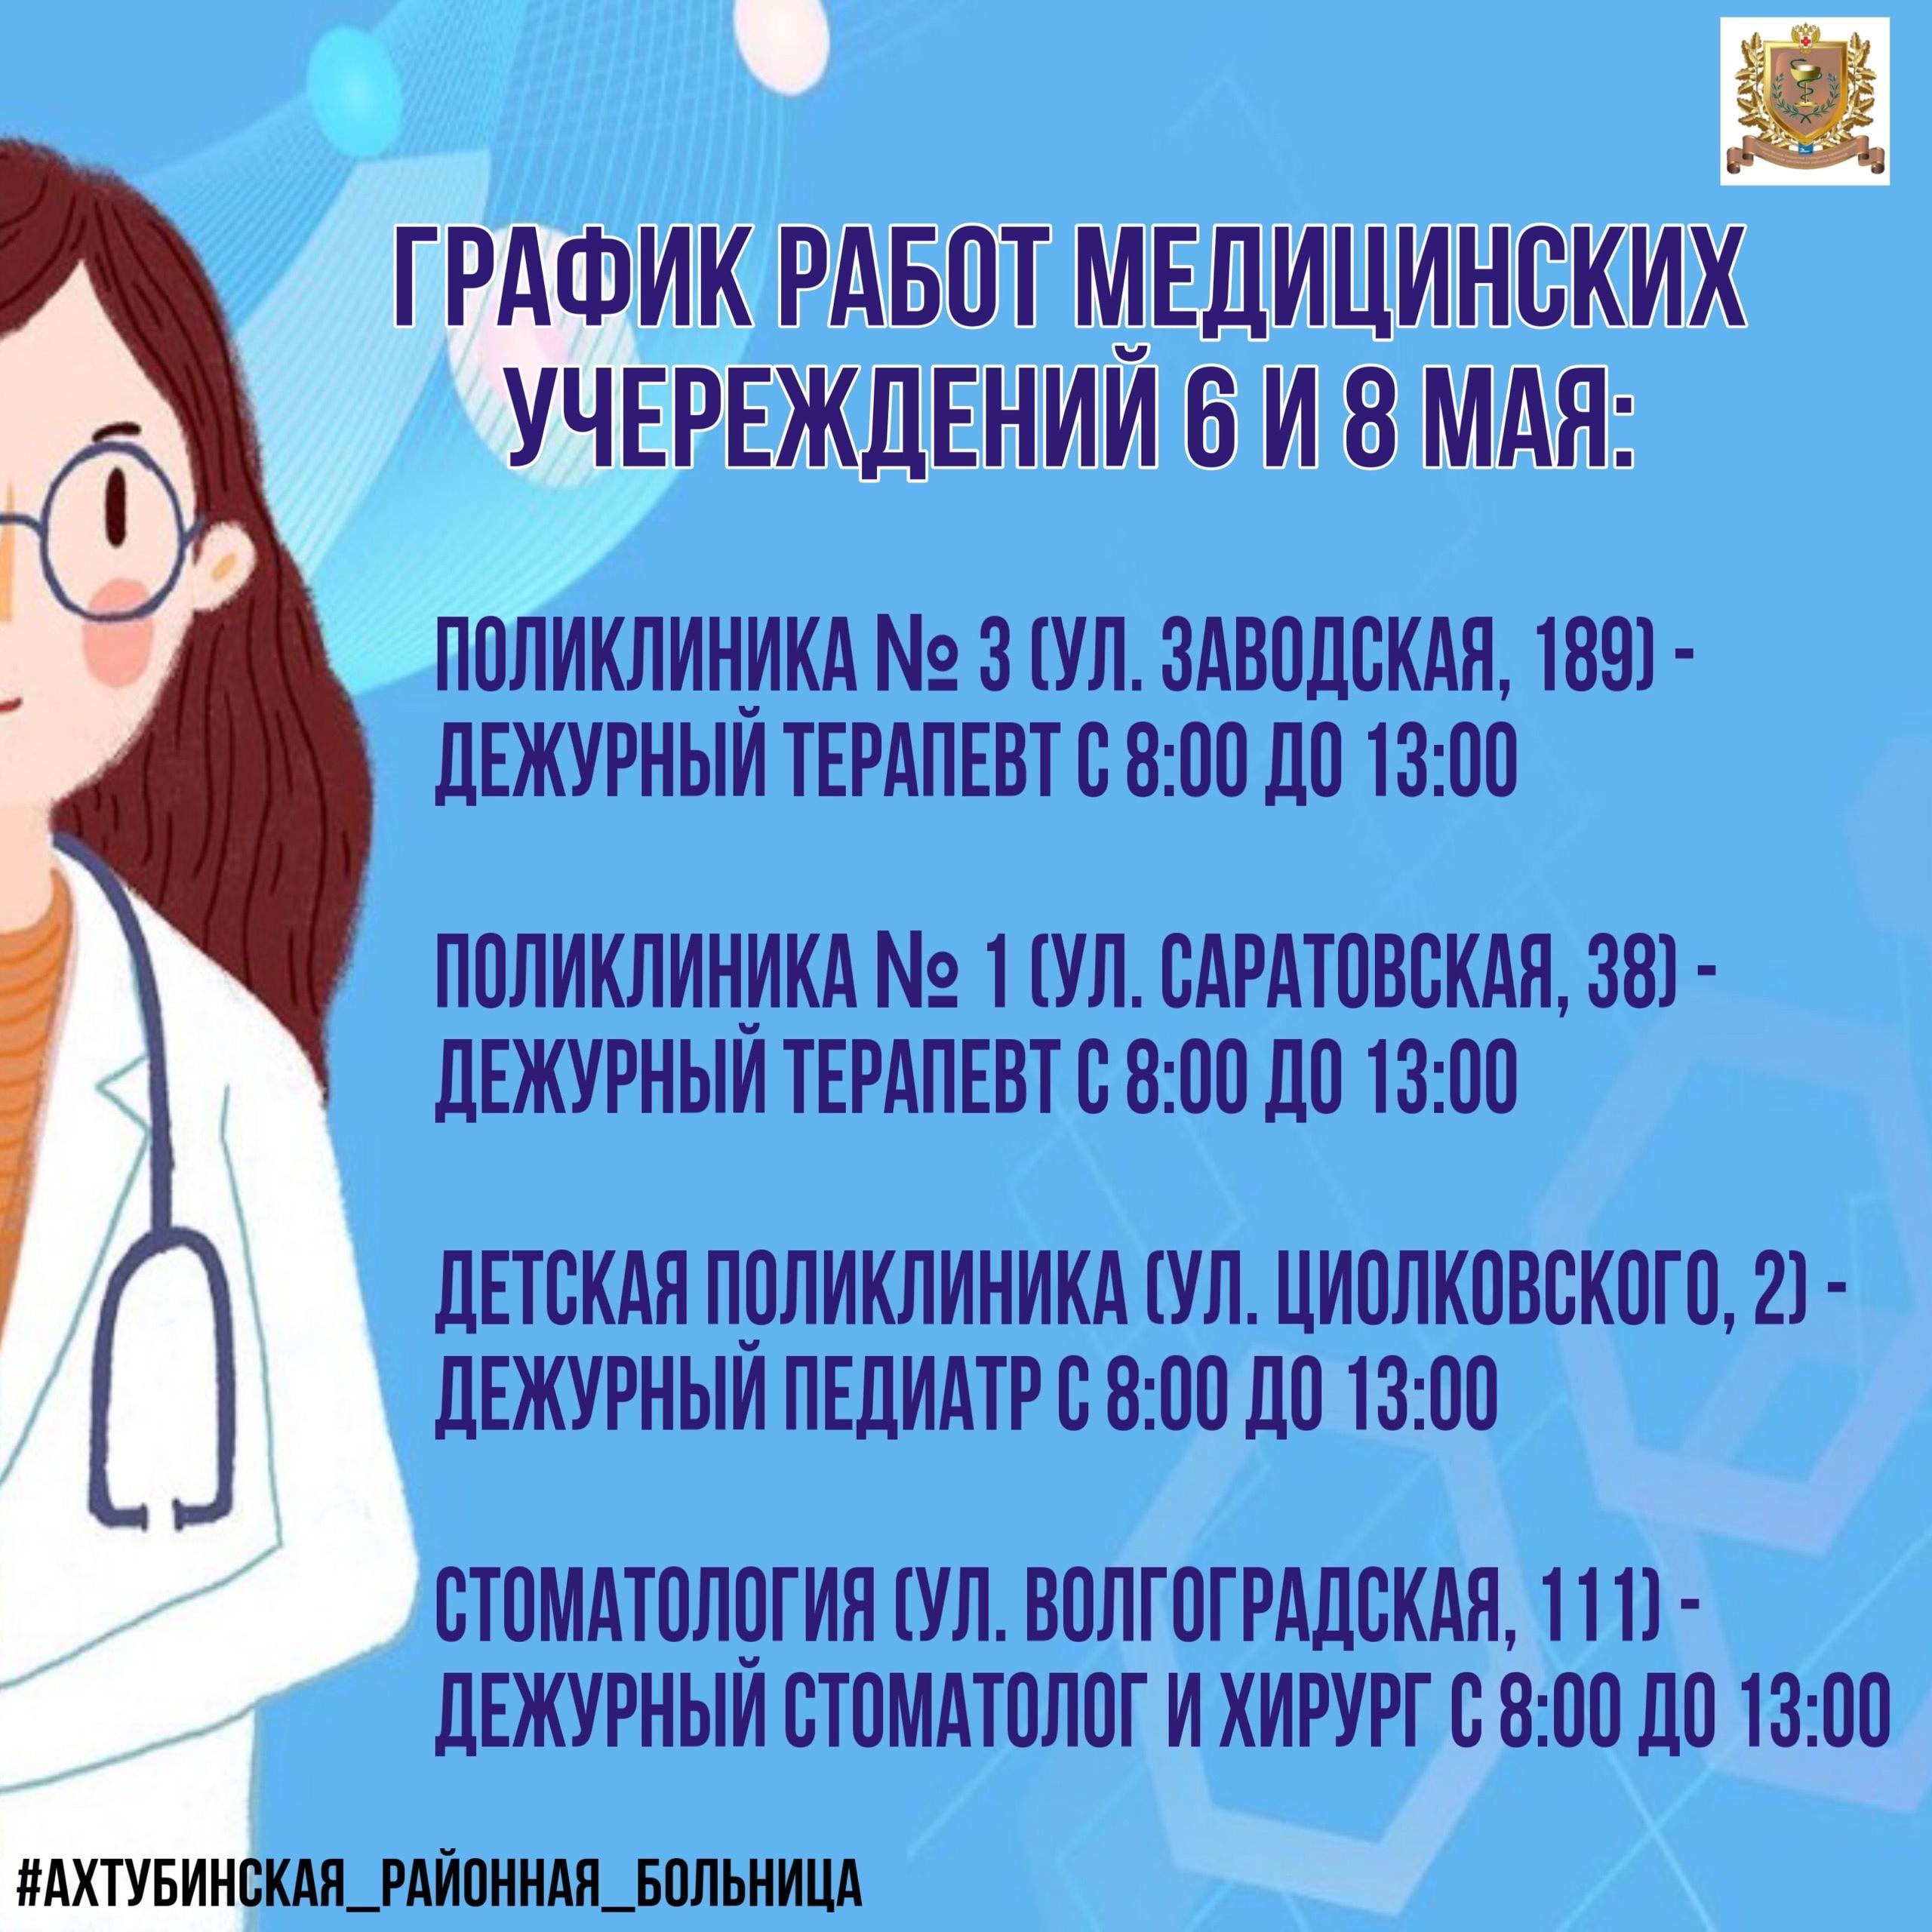 Режим работы медицинских учреждений  6 и 8 мая